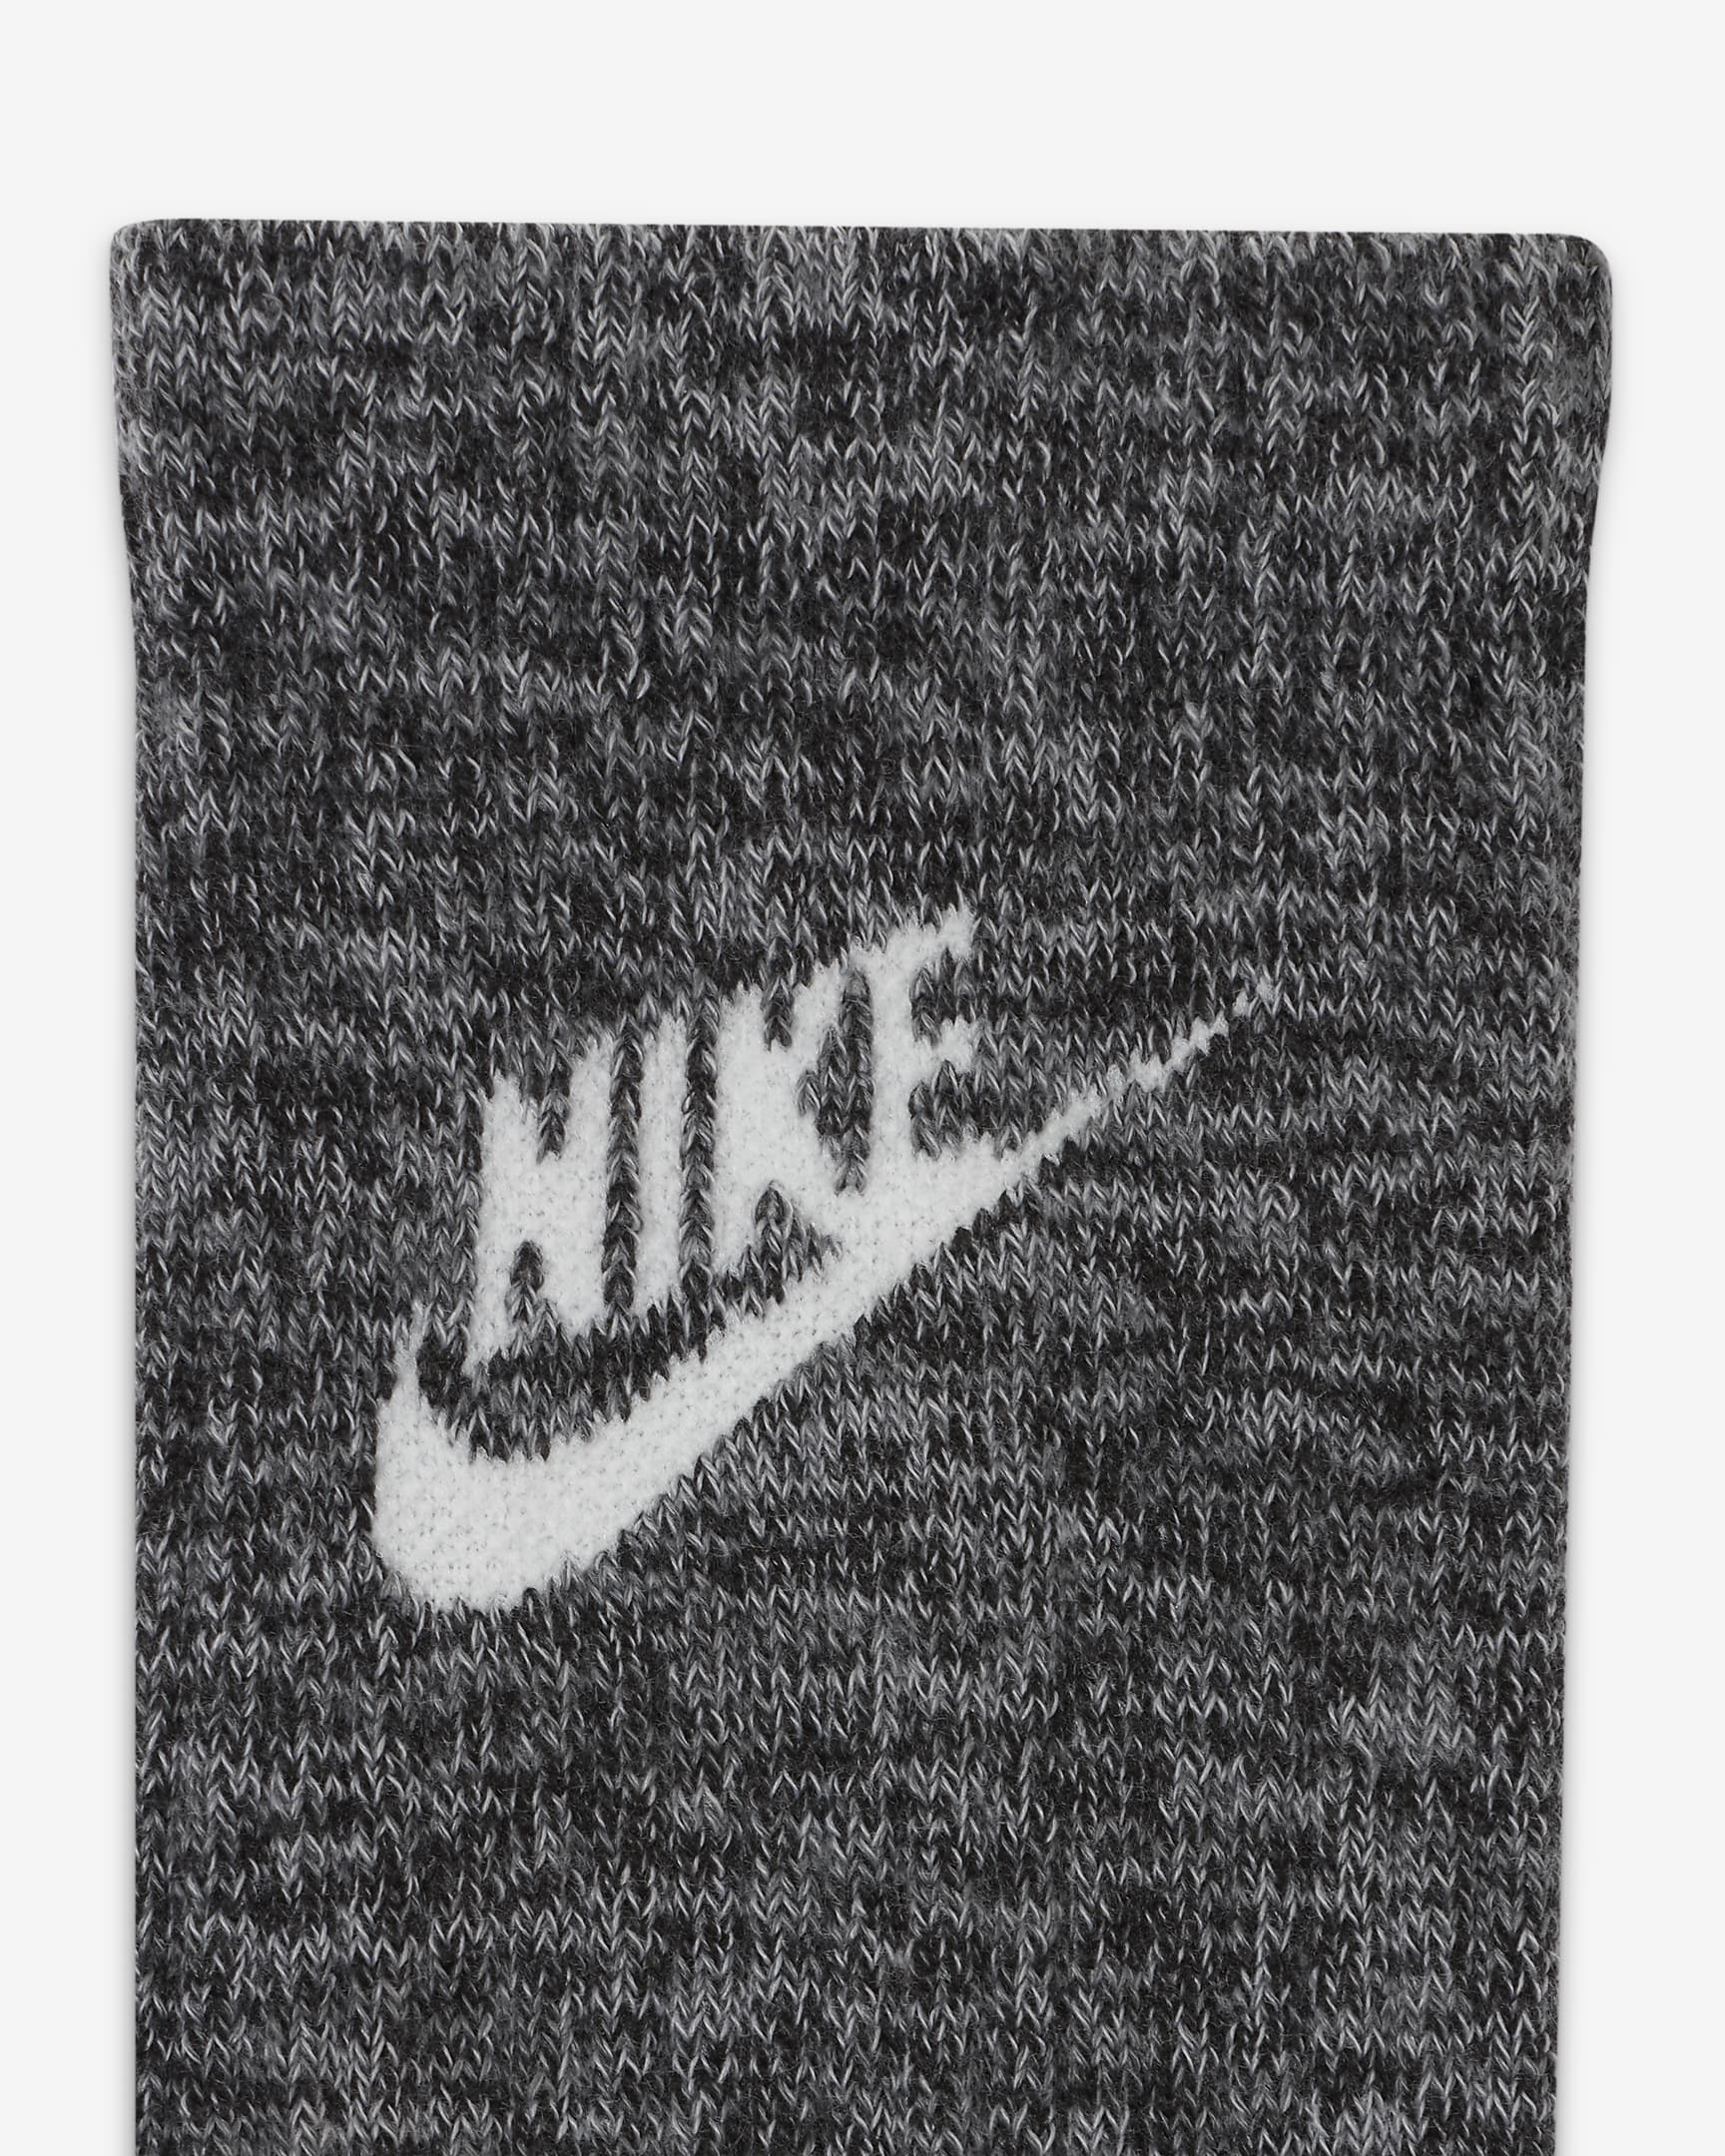 Nike Everyday Plus Cushioned Crew Socks. Nike UK